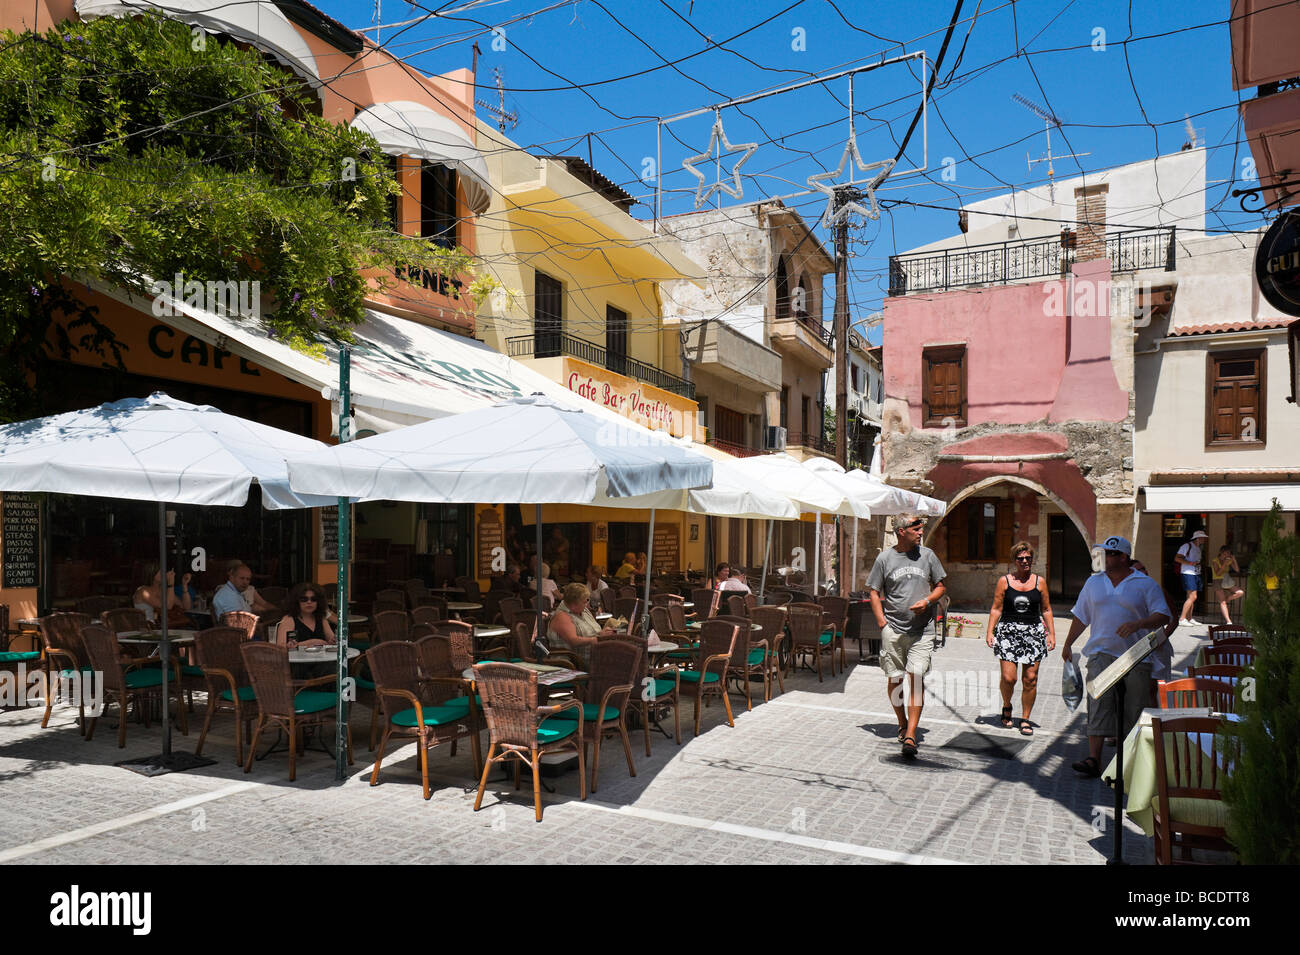 Cafe nella città vecchia di Rethymnon, North West Coast, Creta, Grecia Foto Stock